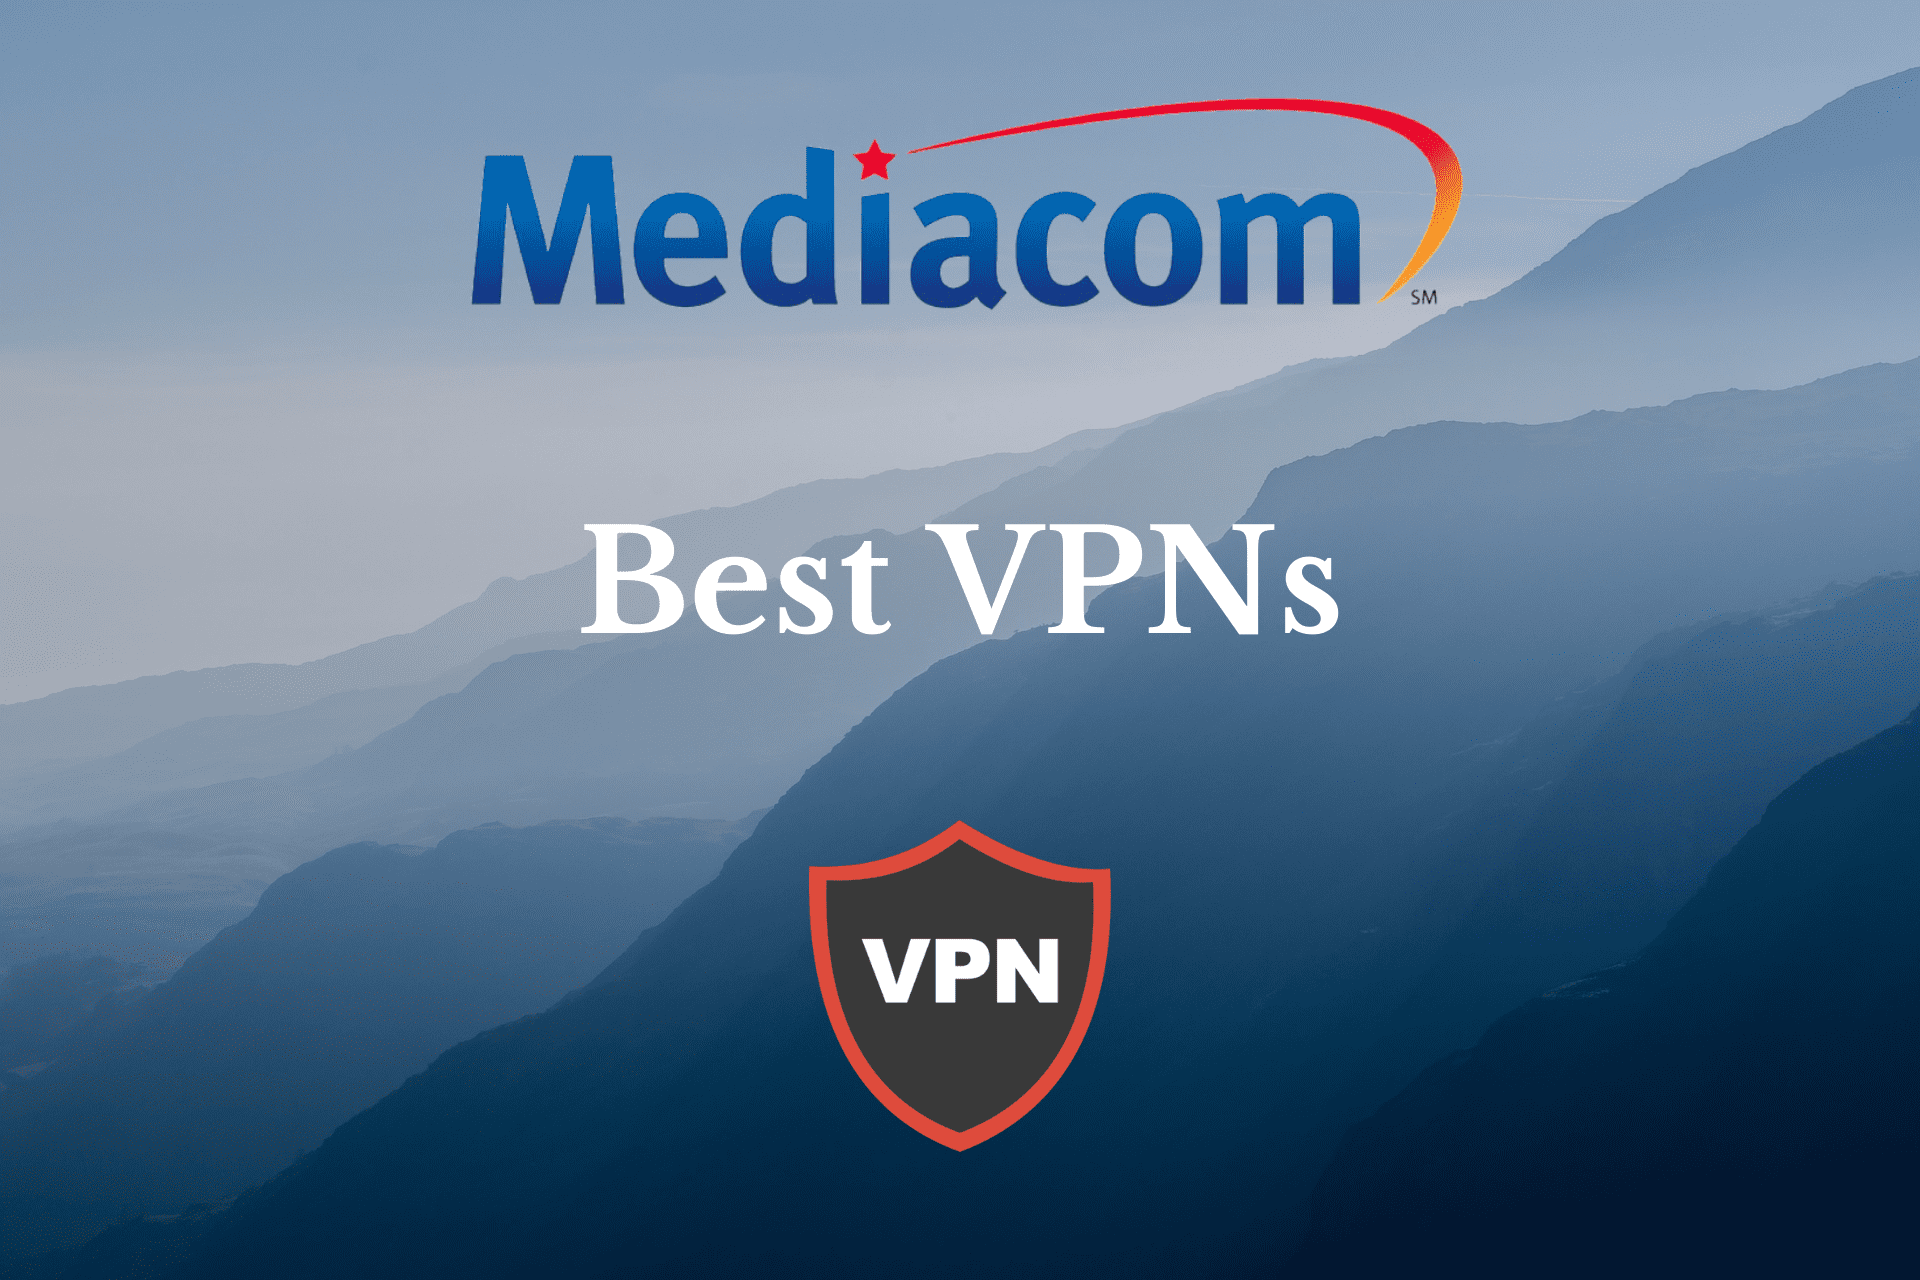 5 best VPNs for Mediacom